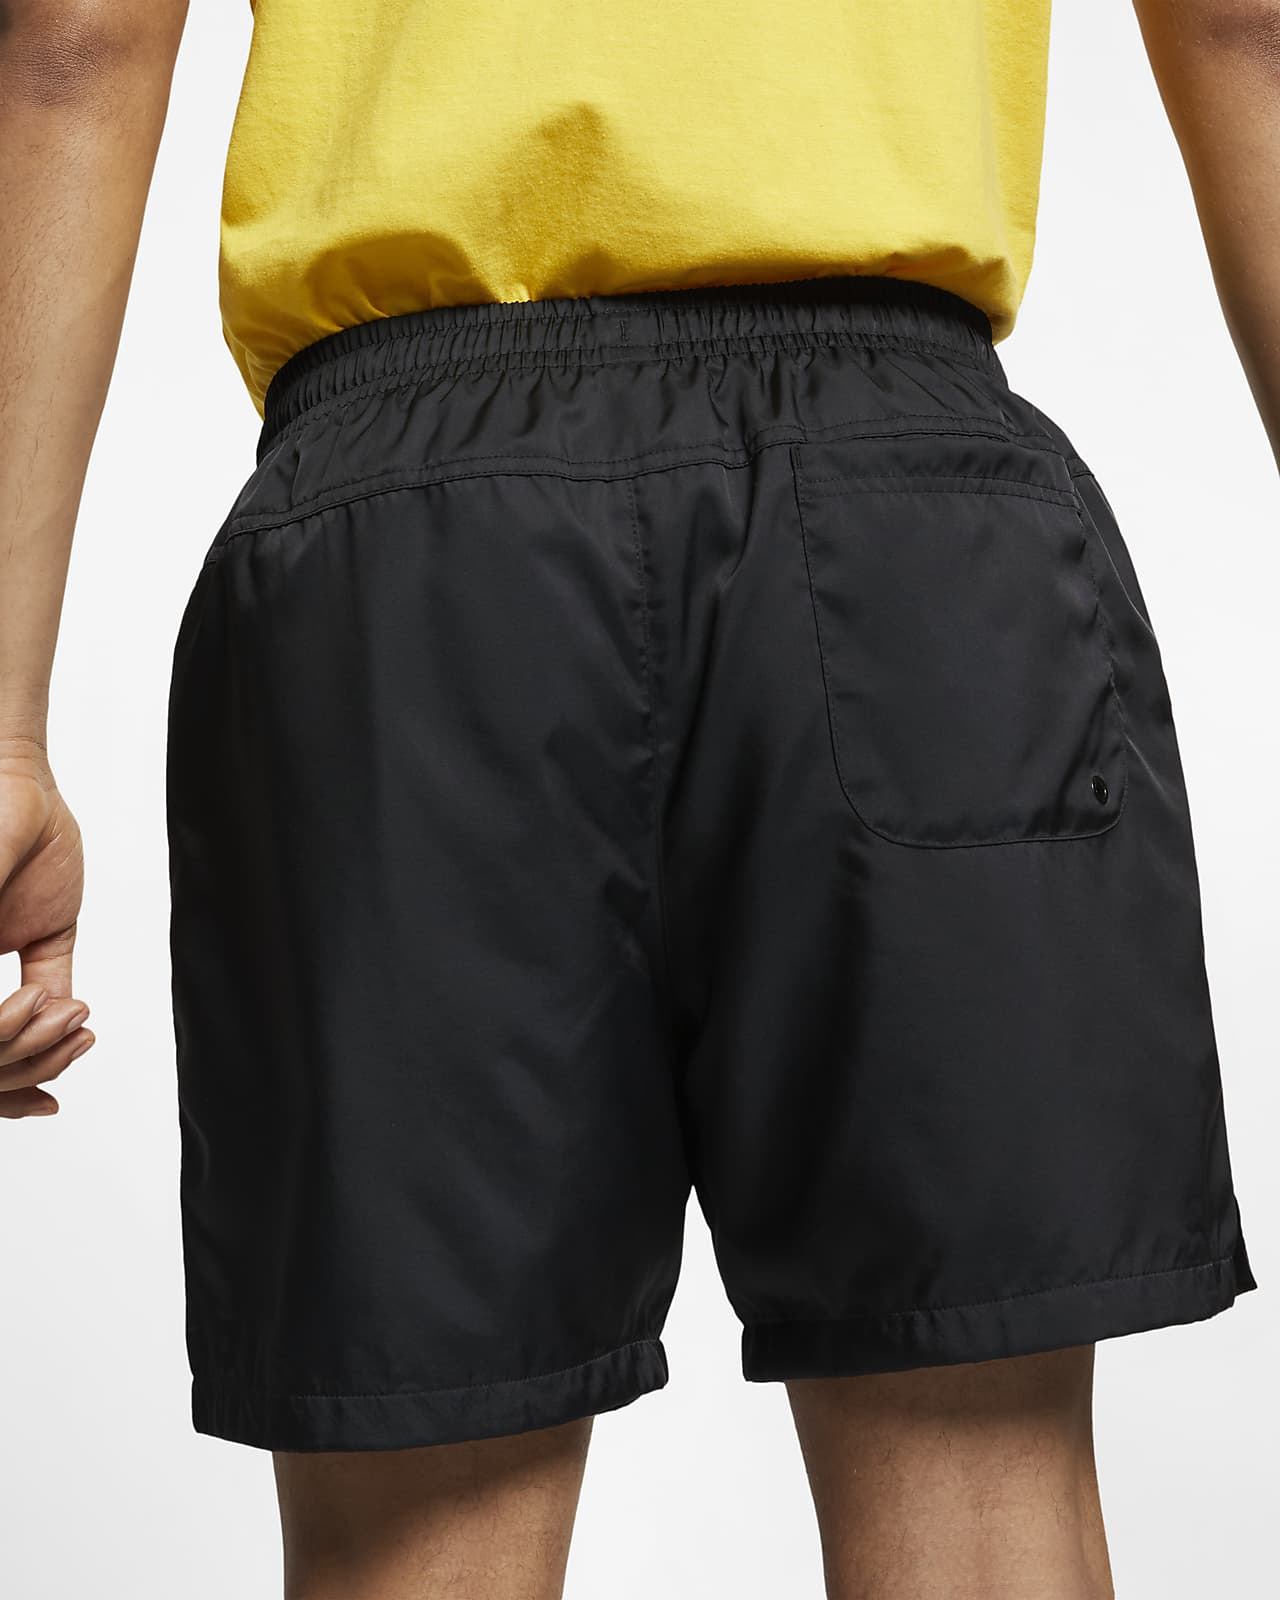 nike baseball shorts with back pocket